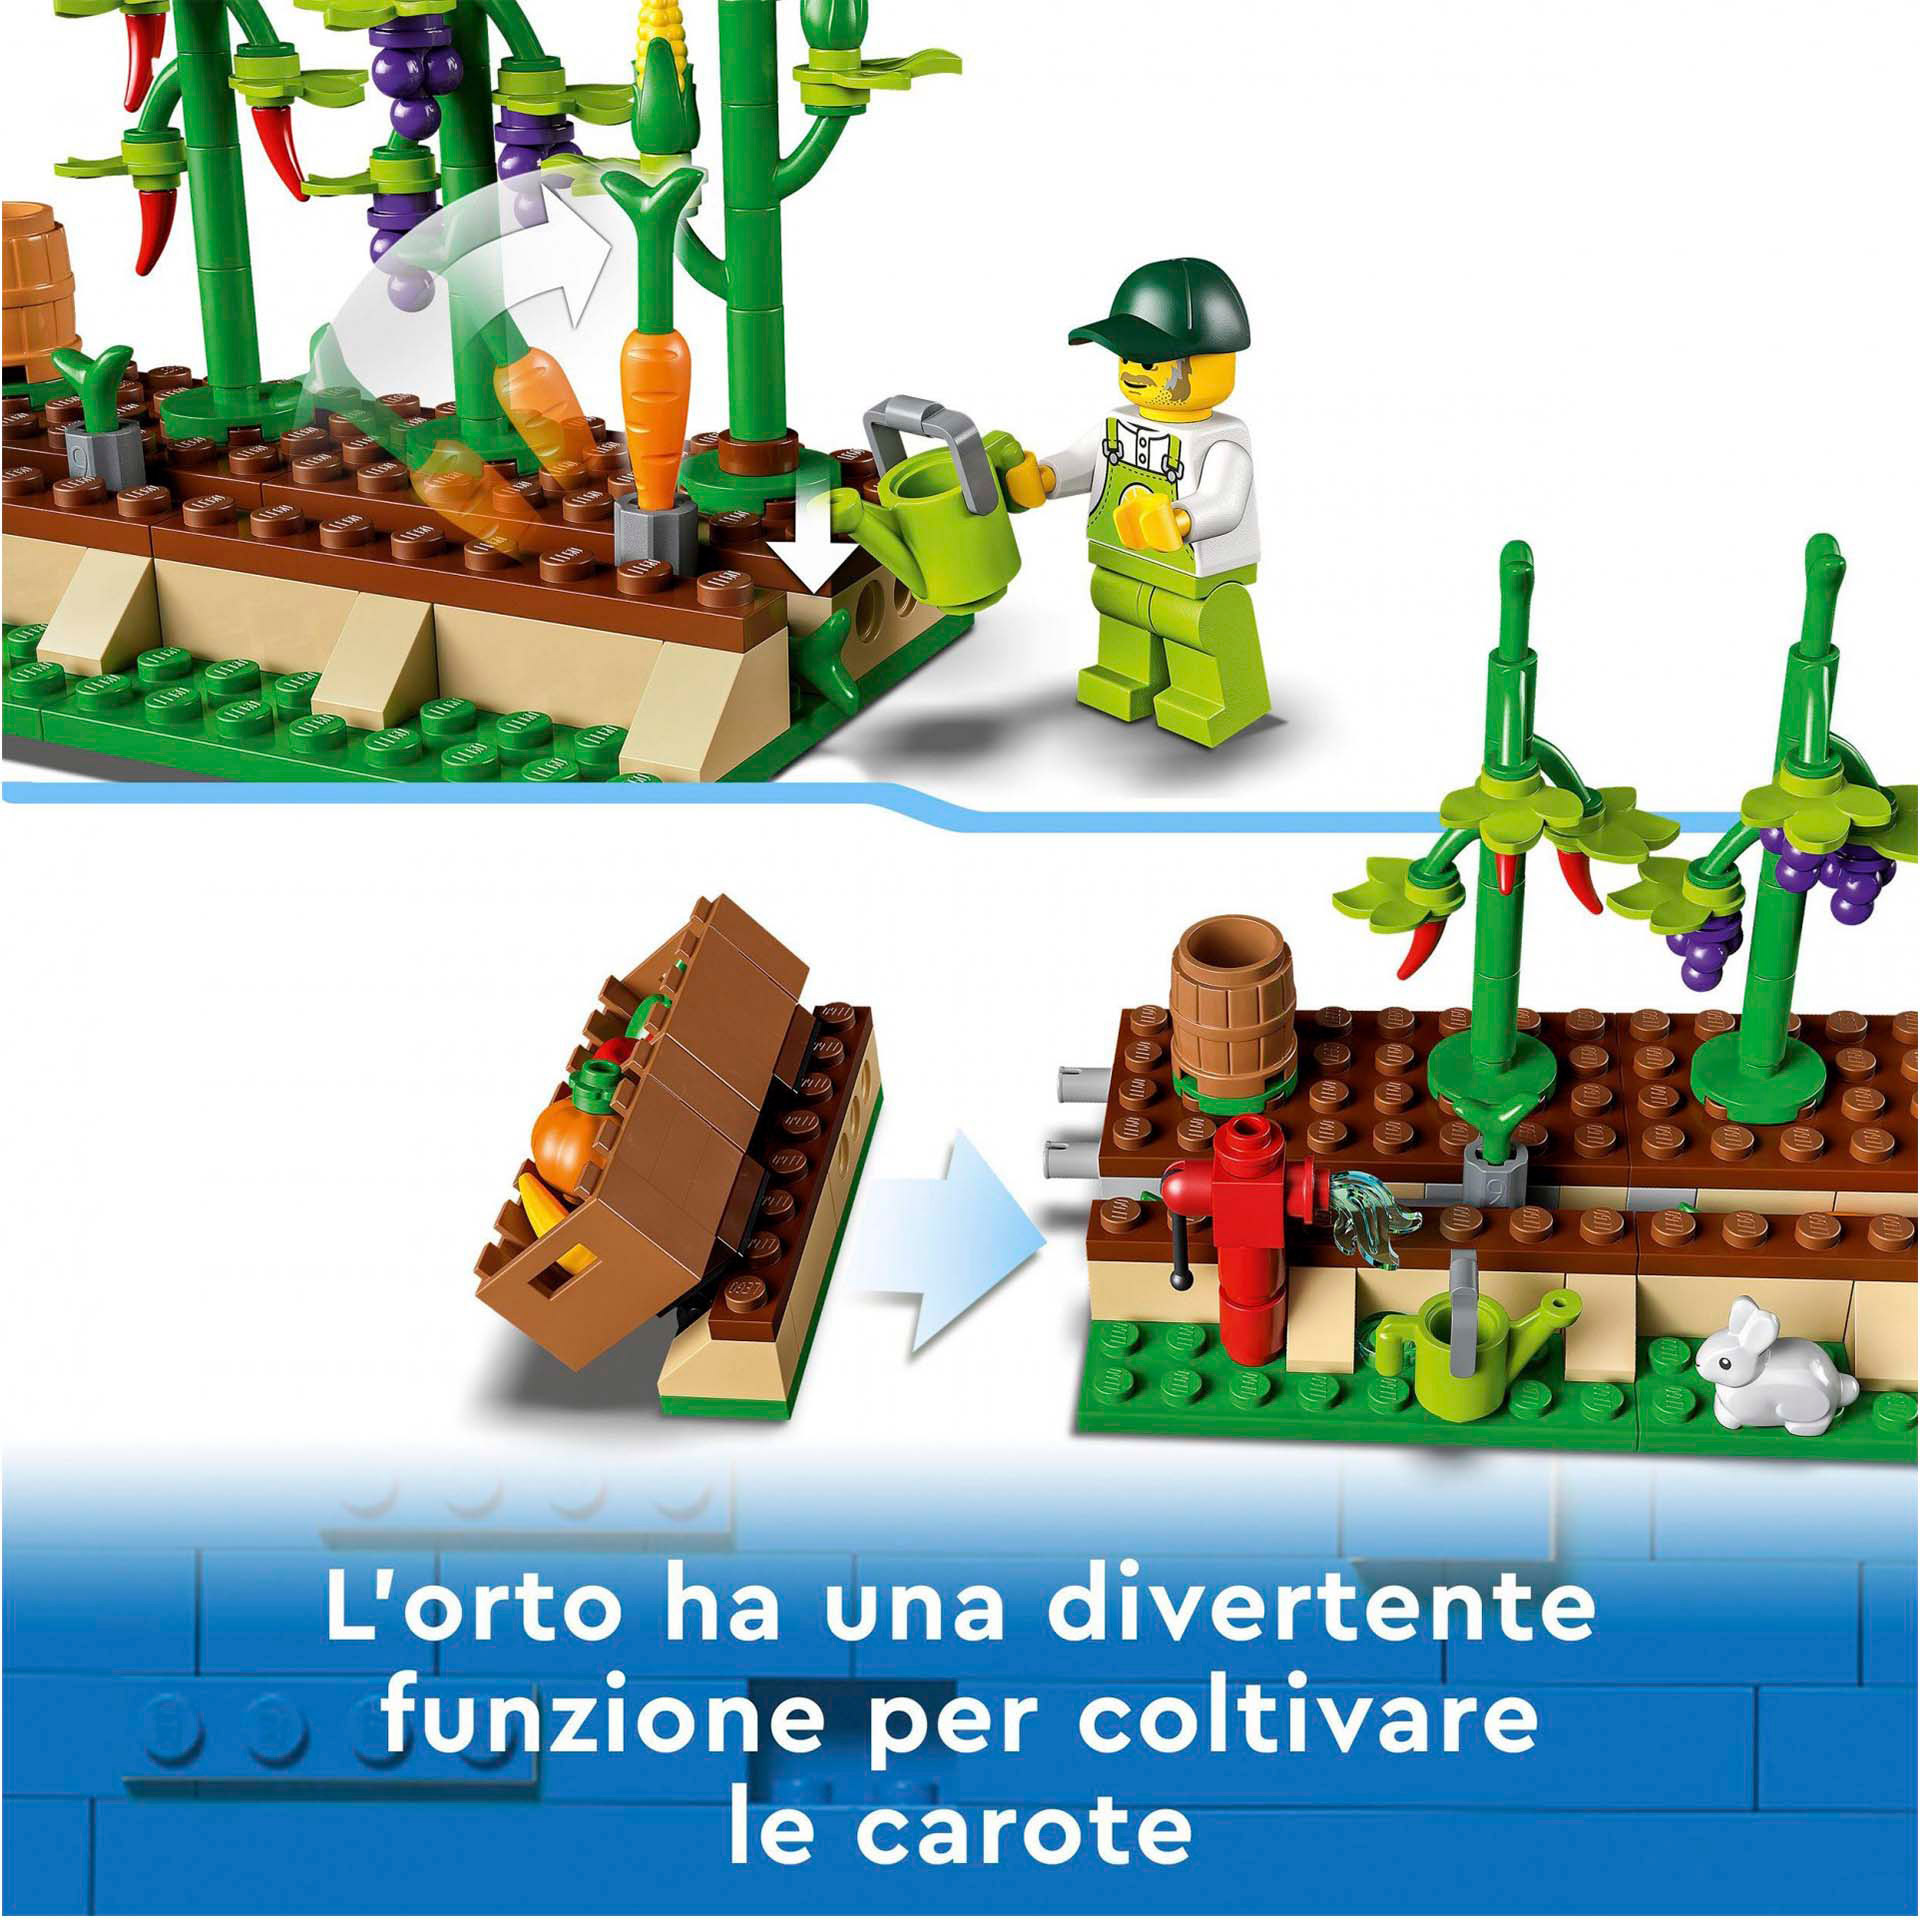 LEGO City Il Furgone del Fruttivendolo, Set con Camion Giocattolo, Fattoria Mobi 60345, , large